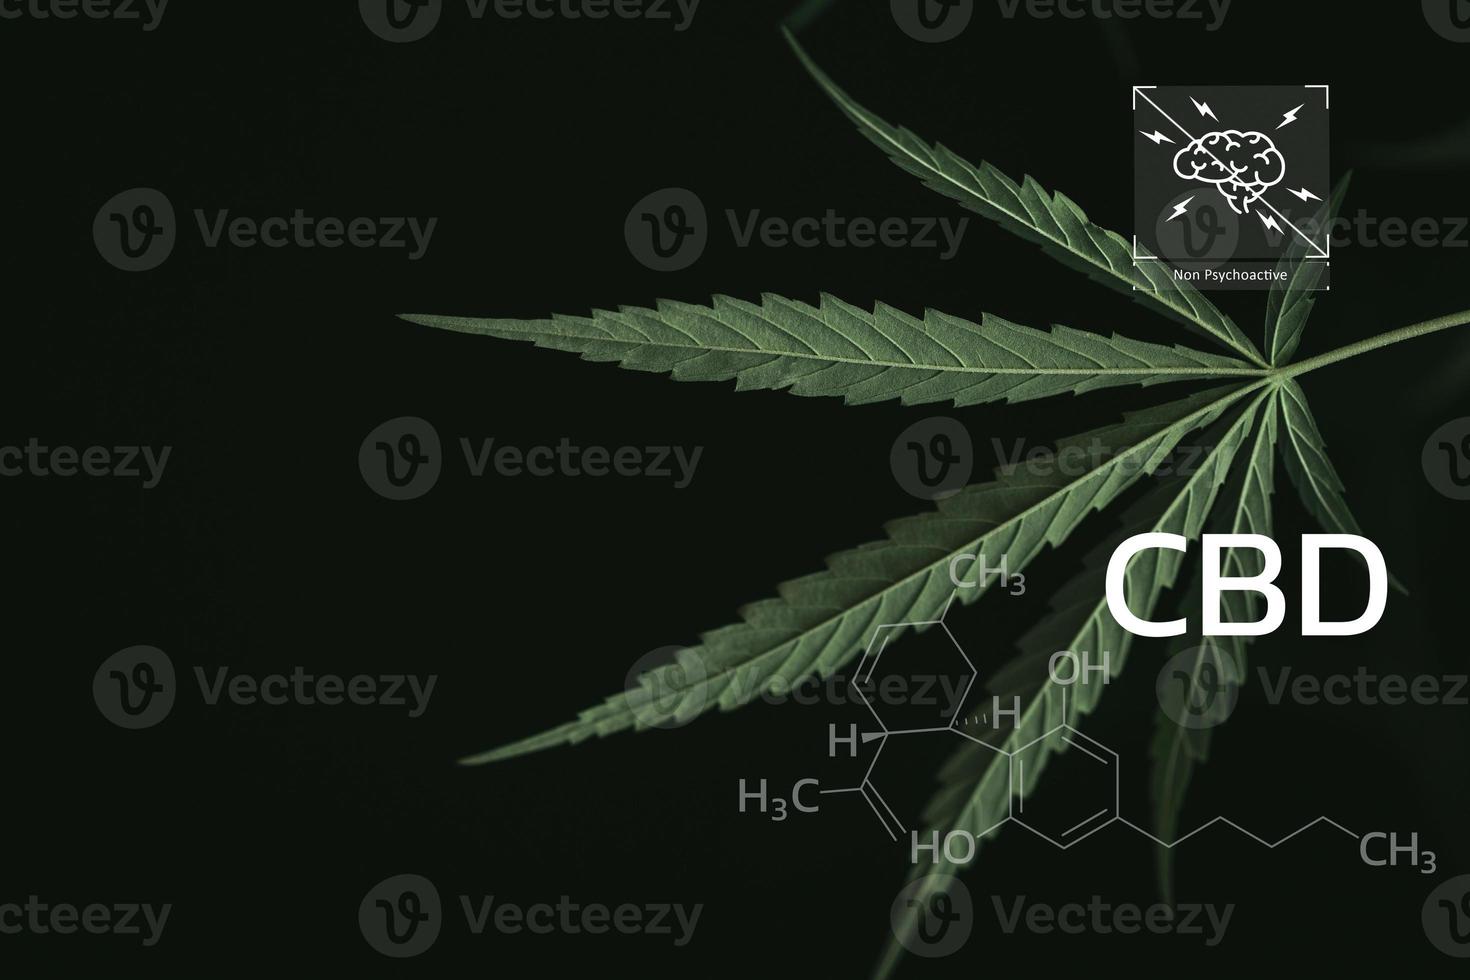 cbd kemisk formel, skön bakgrund av grön cannabis blommor en plats för kopia Plats, apotek företag. cannabinoider och hälsa, hampa industri, grön blad mönster bakgrund. foto